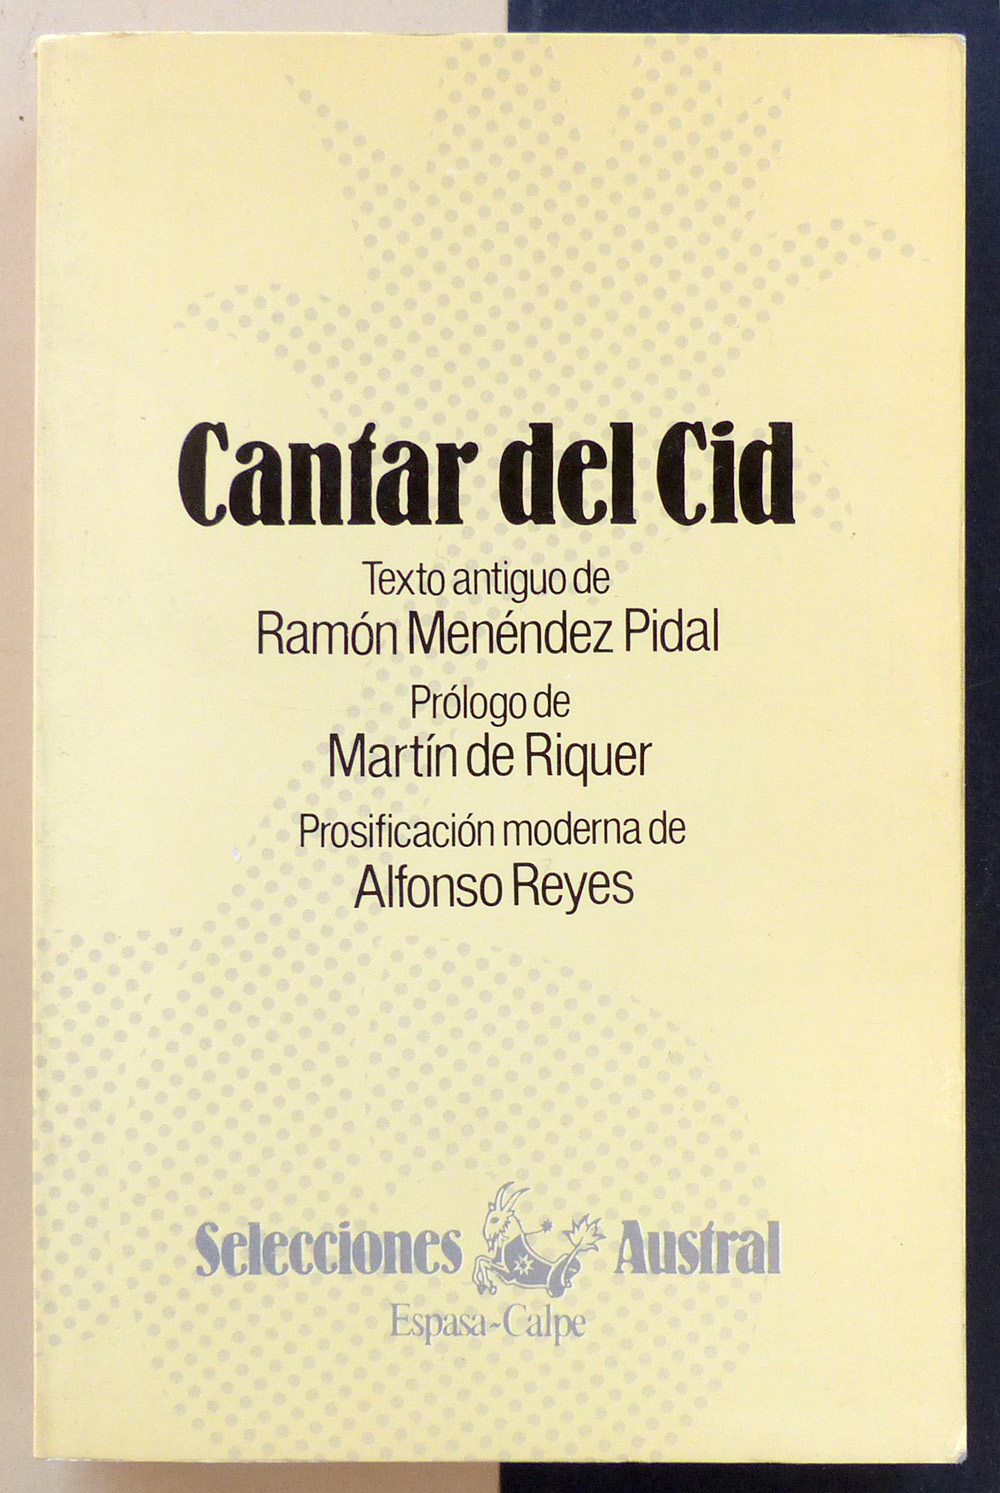 Cantar del Cid. Texto antiguo de Ramón Menéndez Pidal - Anónimo